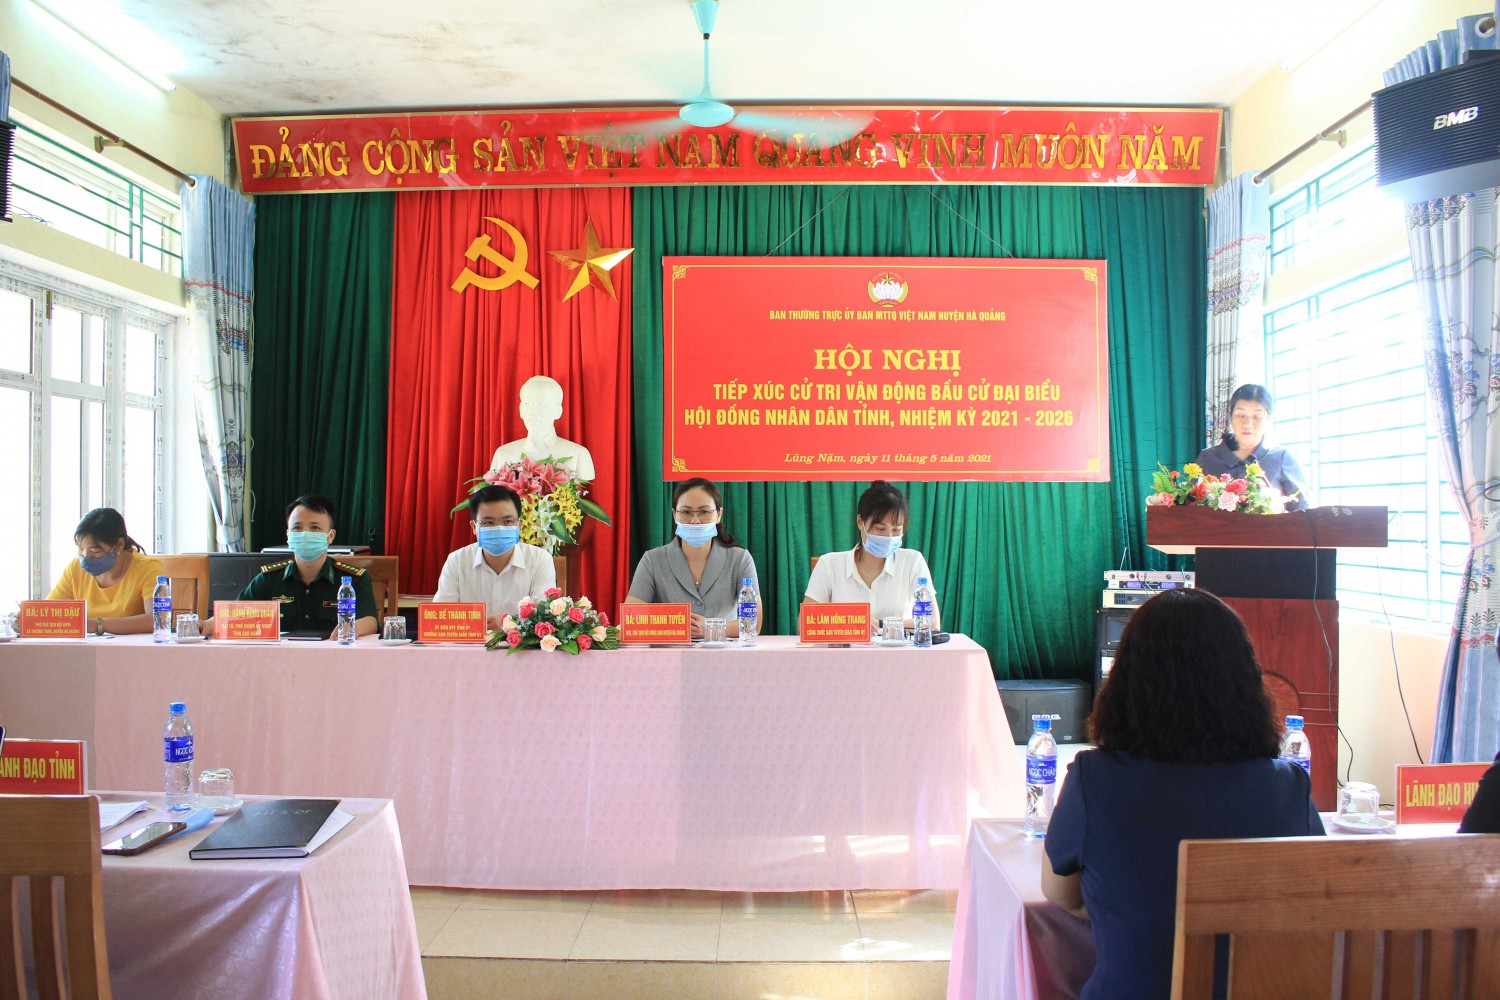 Hội nghị tiếp xúc cử tri vận động bầu cử tại các xã: Lũng Nặm, Cải Viên (Hà Quảng)